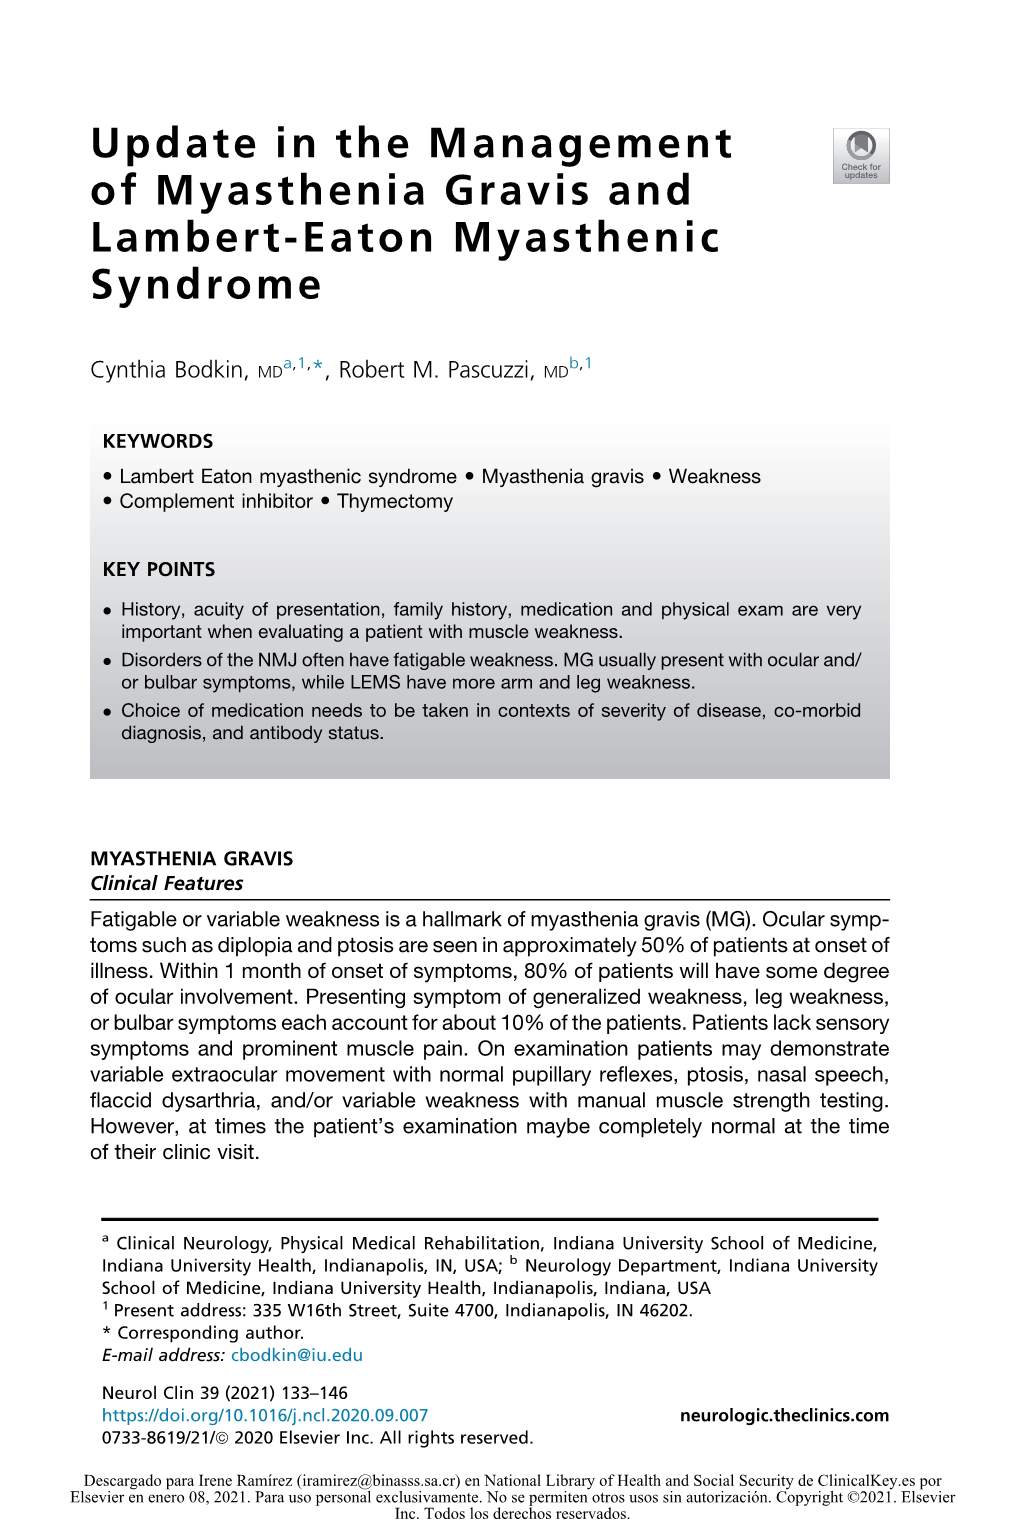 Update in the Management of Myasthenia Gravis and Lambert-Eaton Myasthenic Syndrome